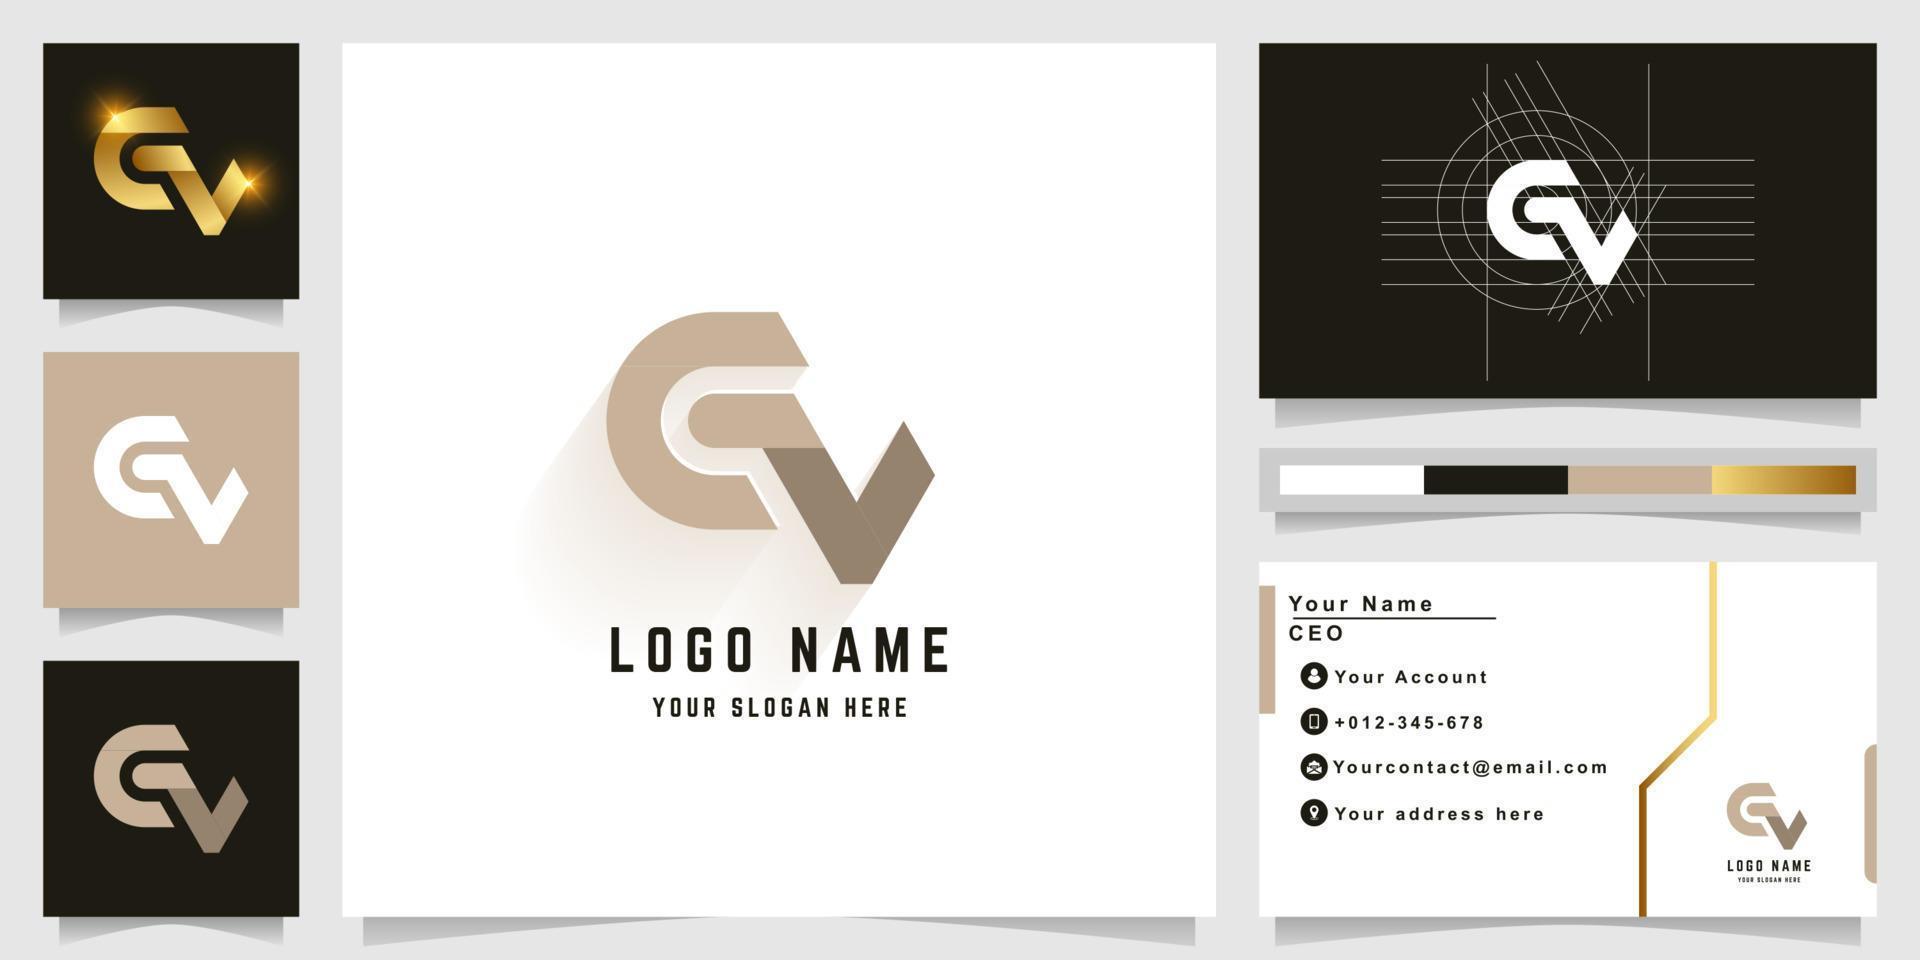 letra cv ou logotipo de monograma gv com design de cartão de visita vetor